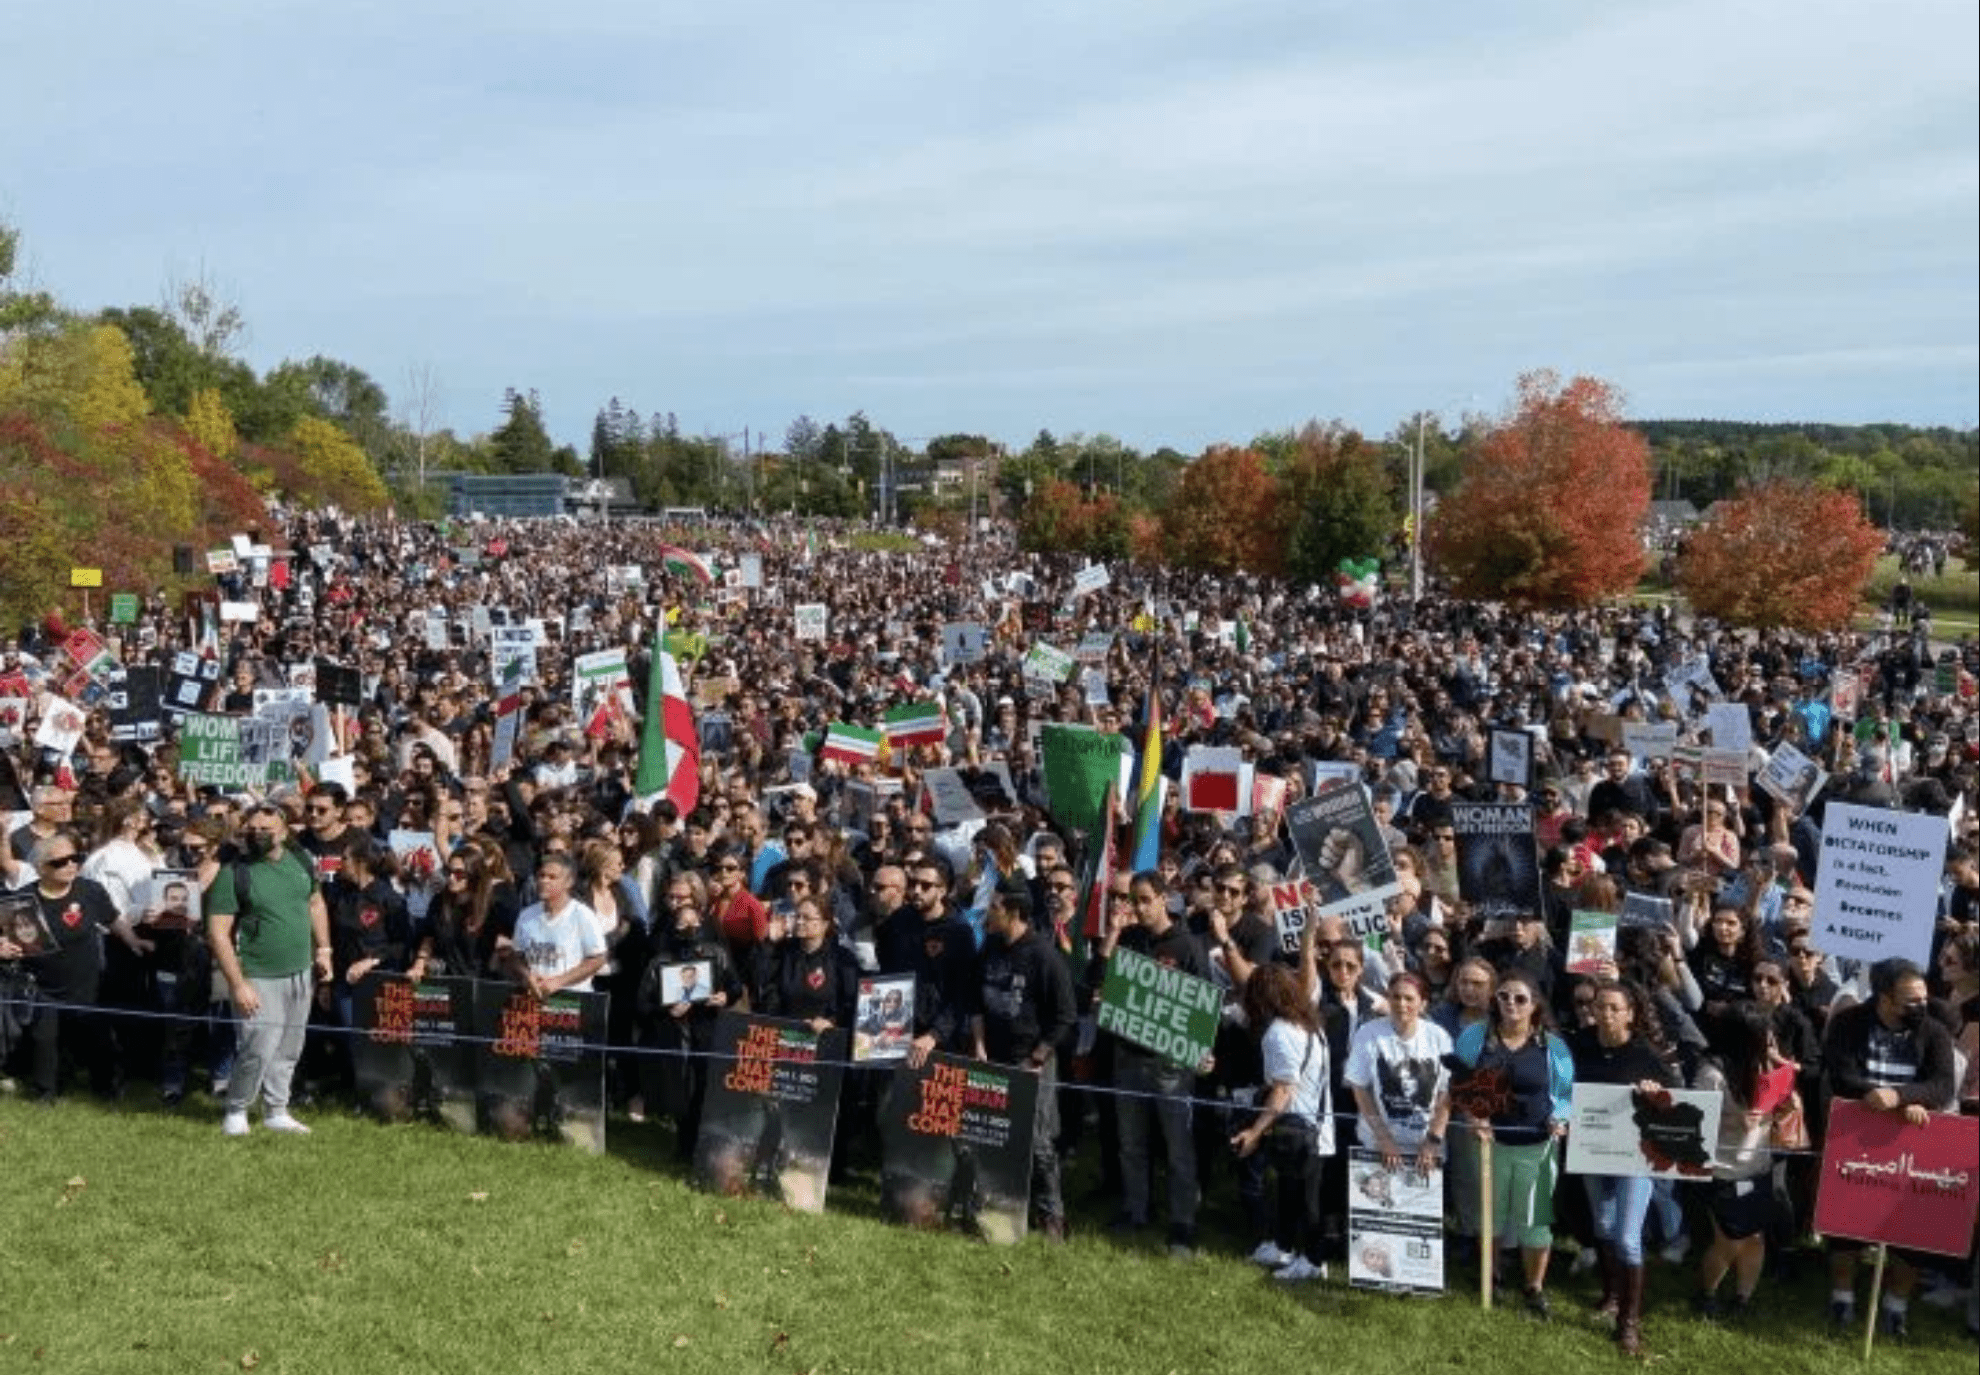 بیش از 50 هزار نفر در ریچموندهیل، انتاریو علیه حکومت ایران اعتراض کردند